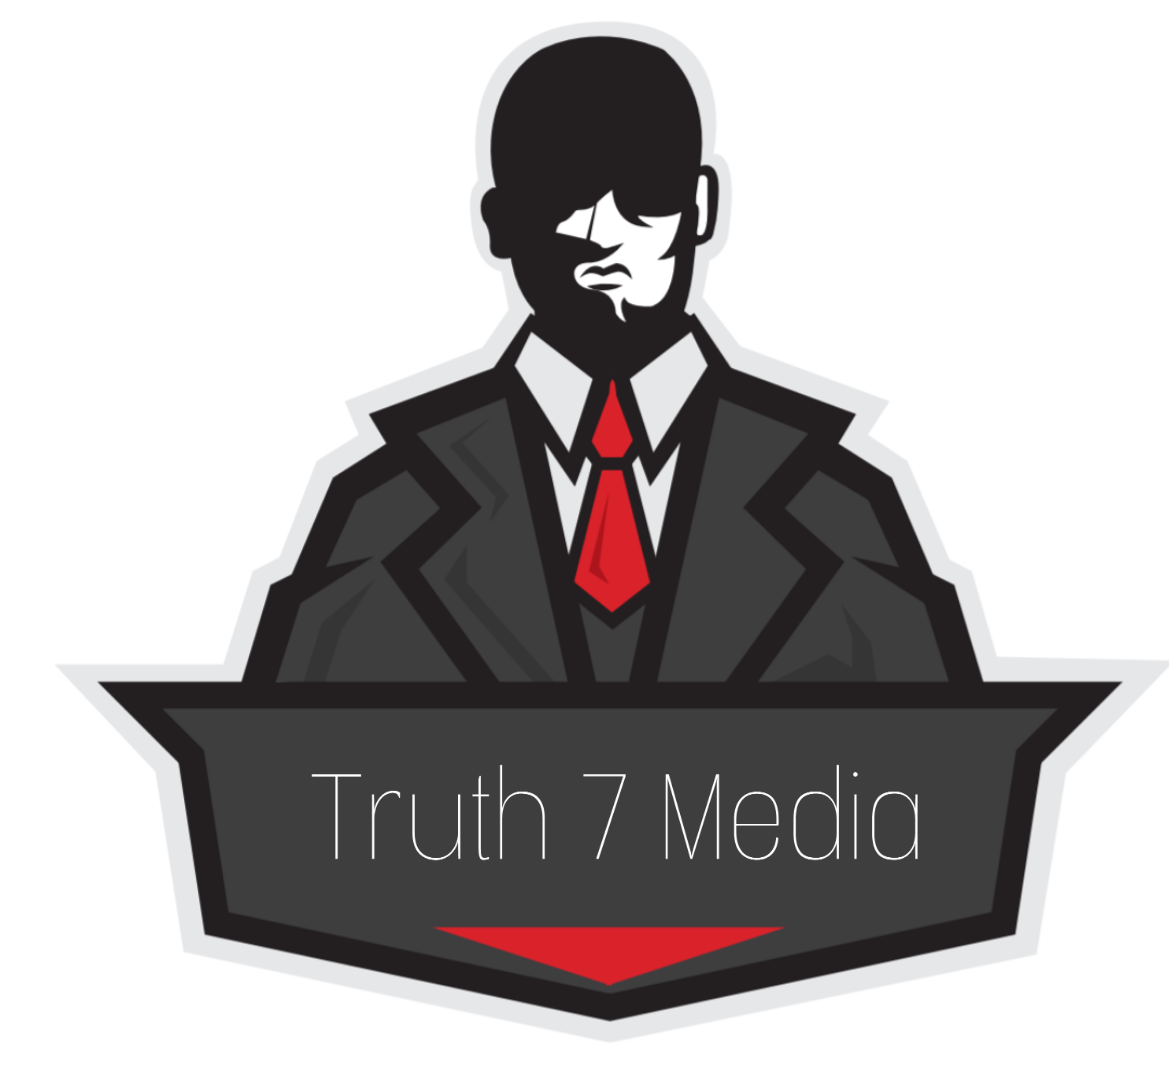 Truth7 Media | A step against lies